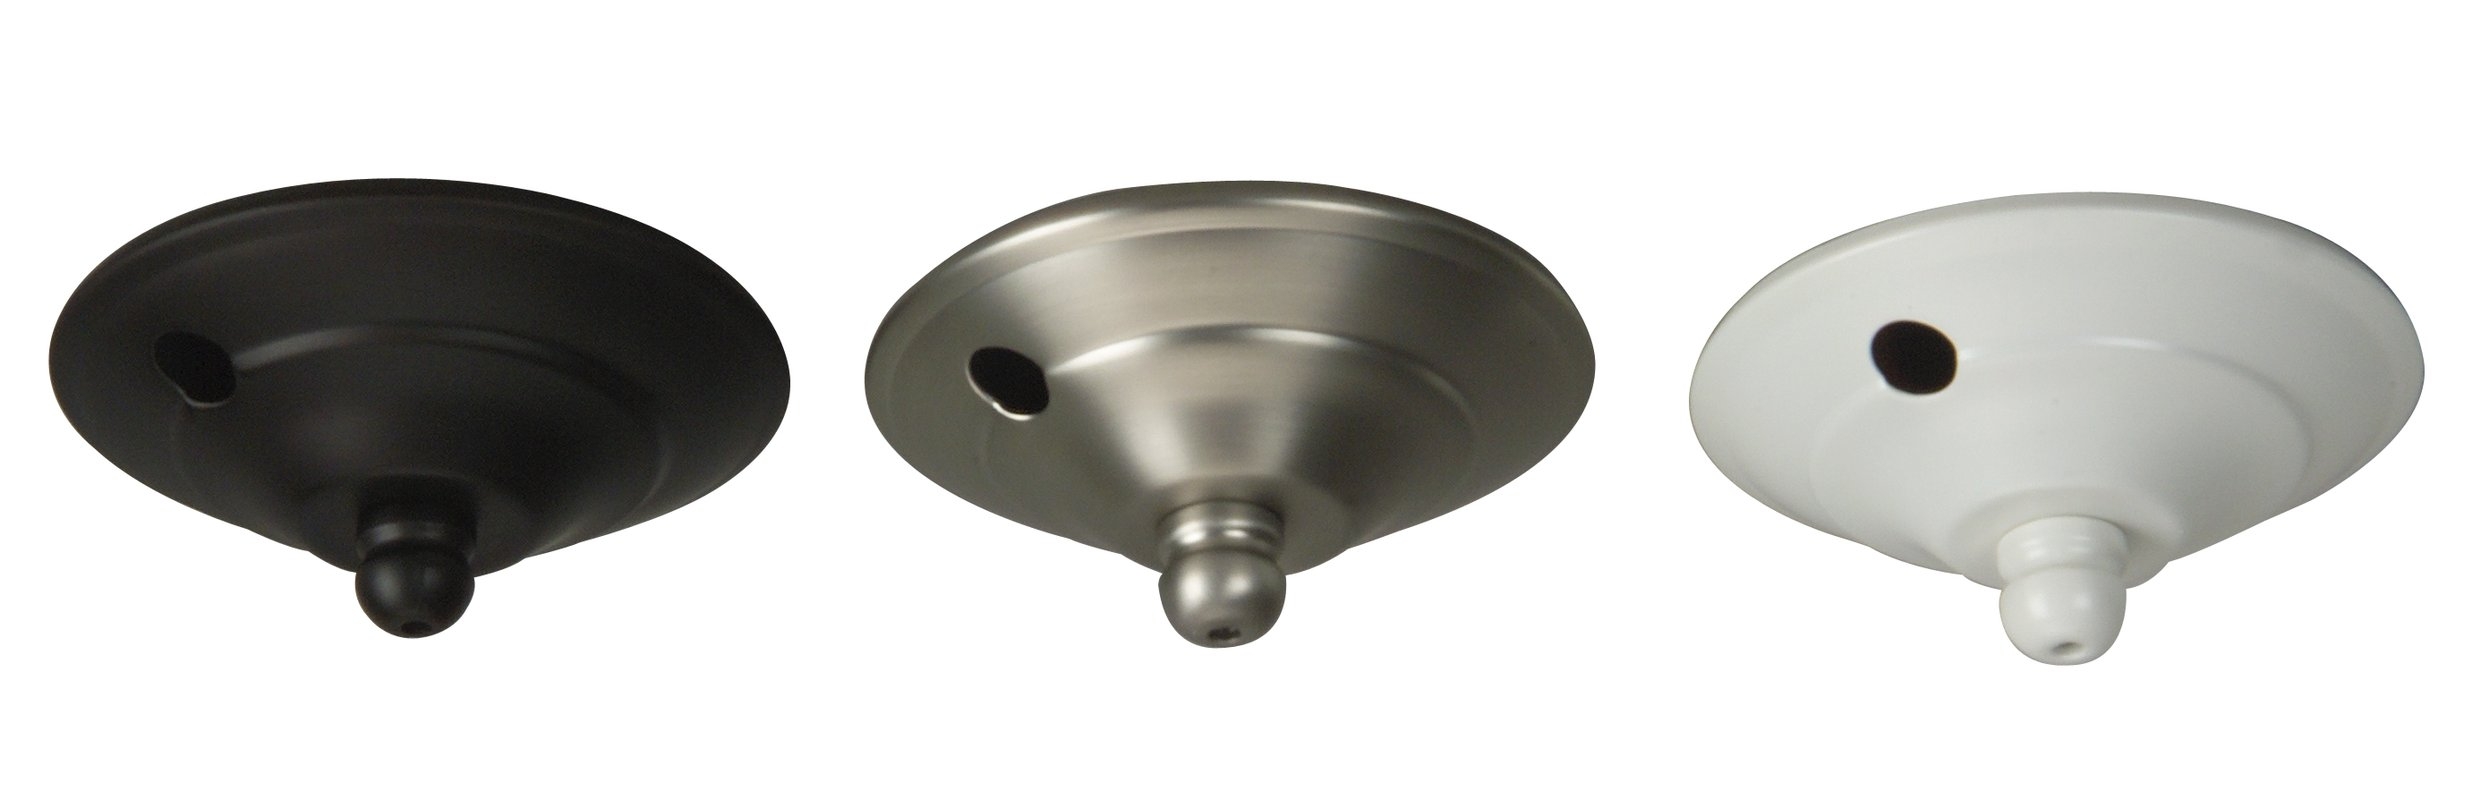 Permalink to Ceiling Fan Light Cap